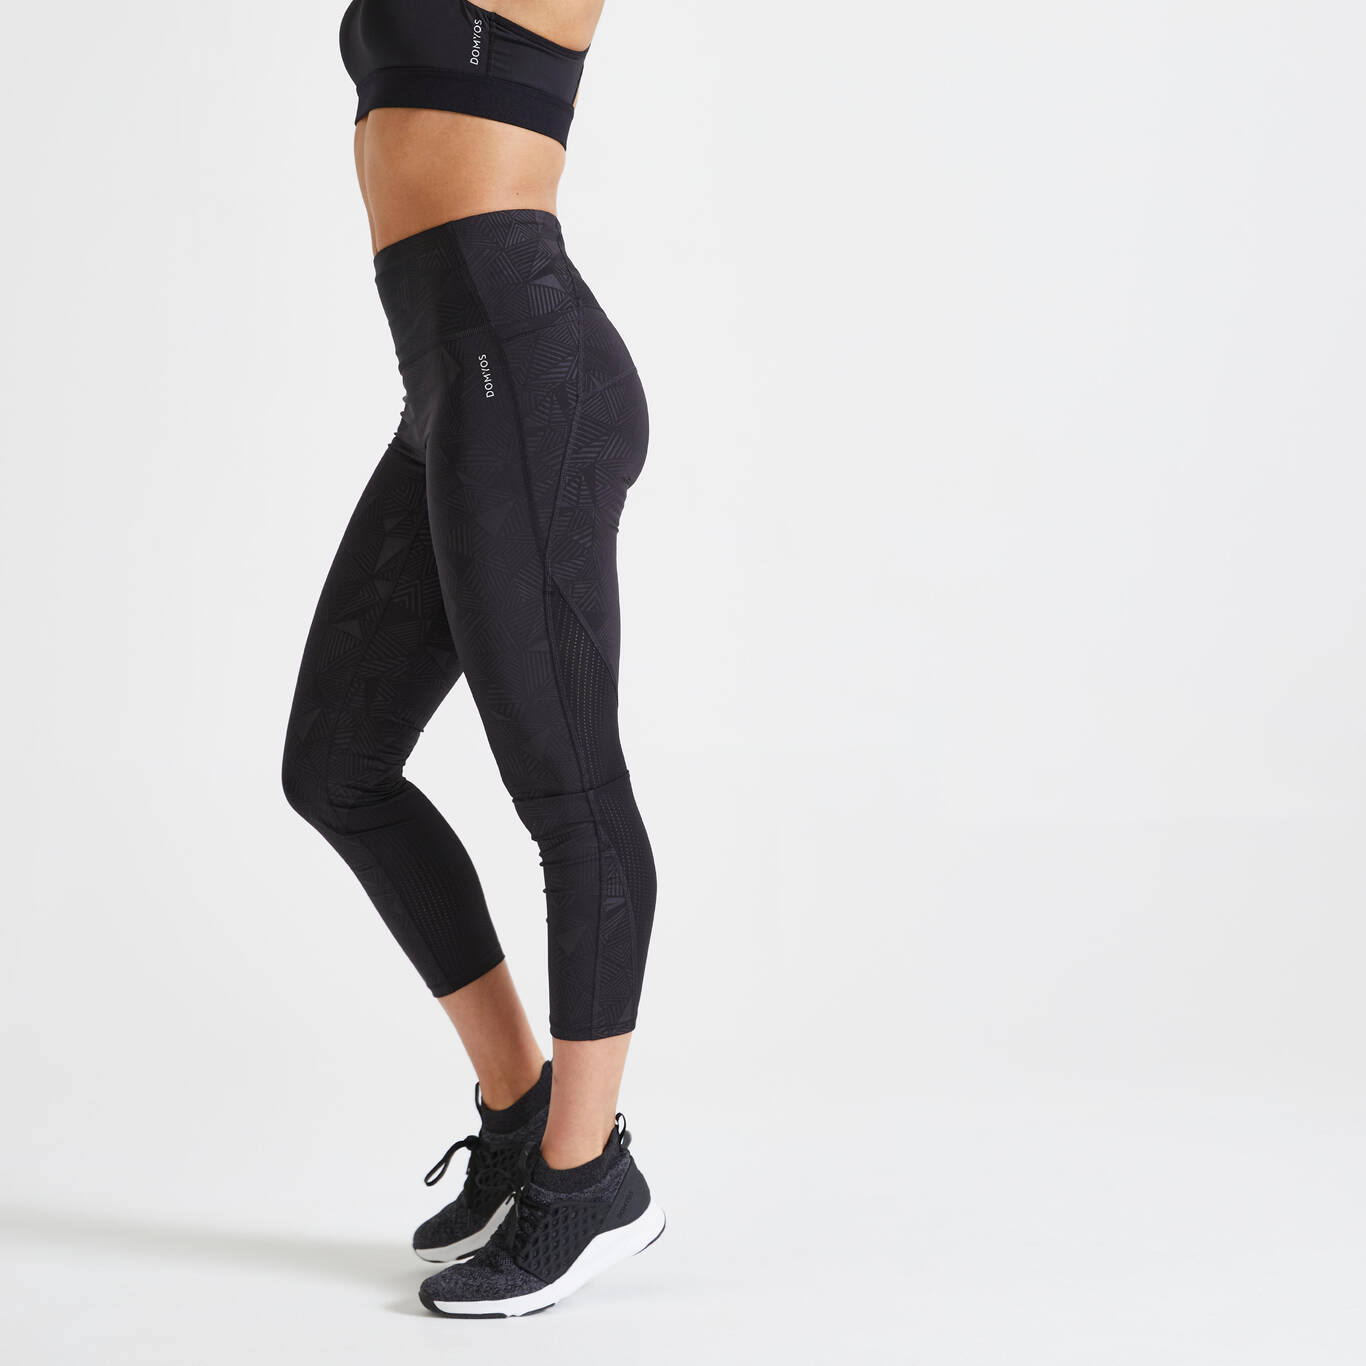 Yoga Leggings for Fitness Legging Sport Femme Back Pocket Pants